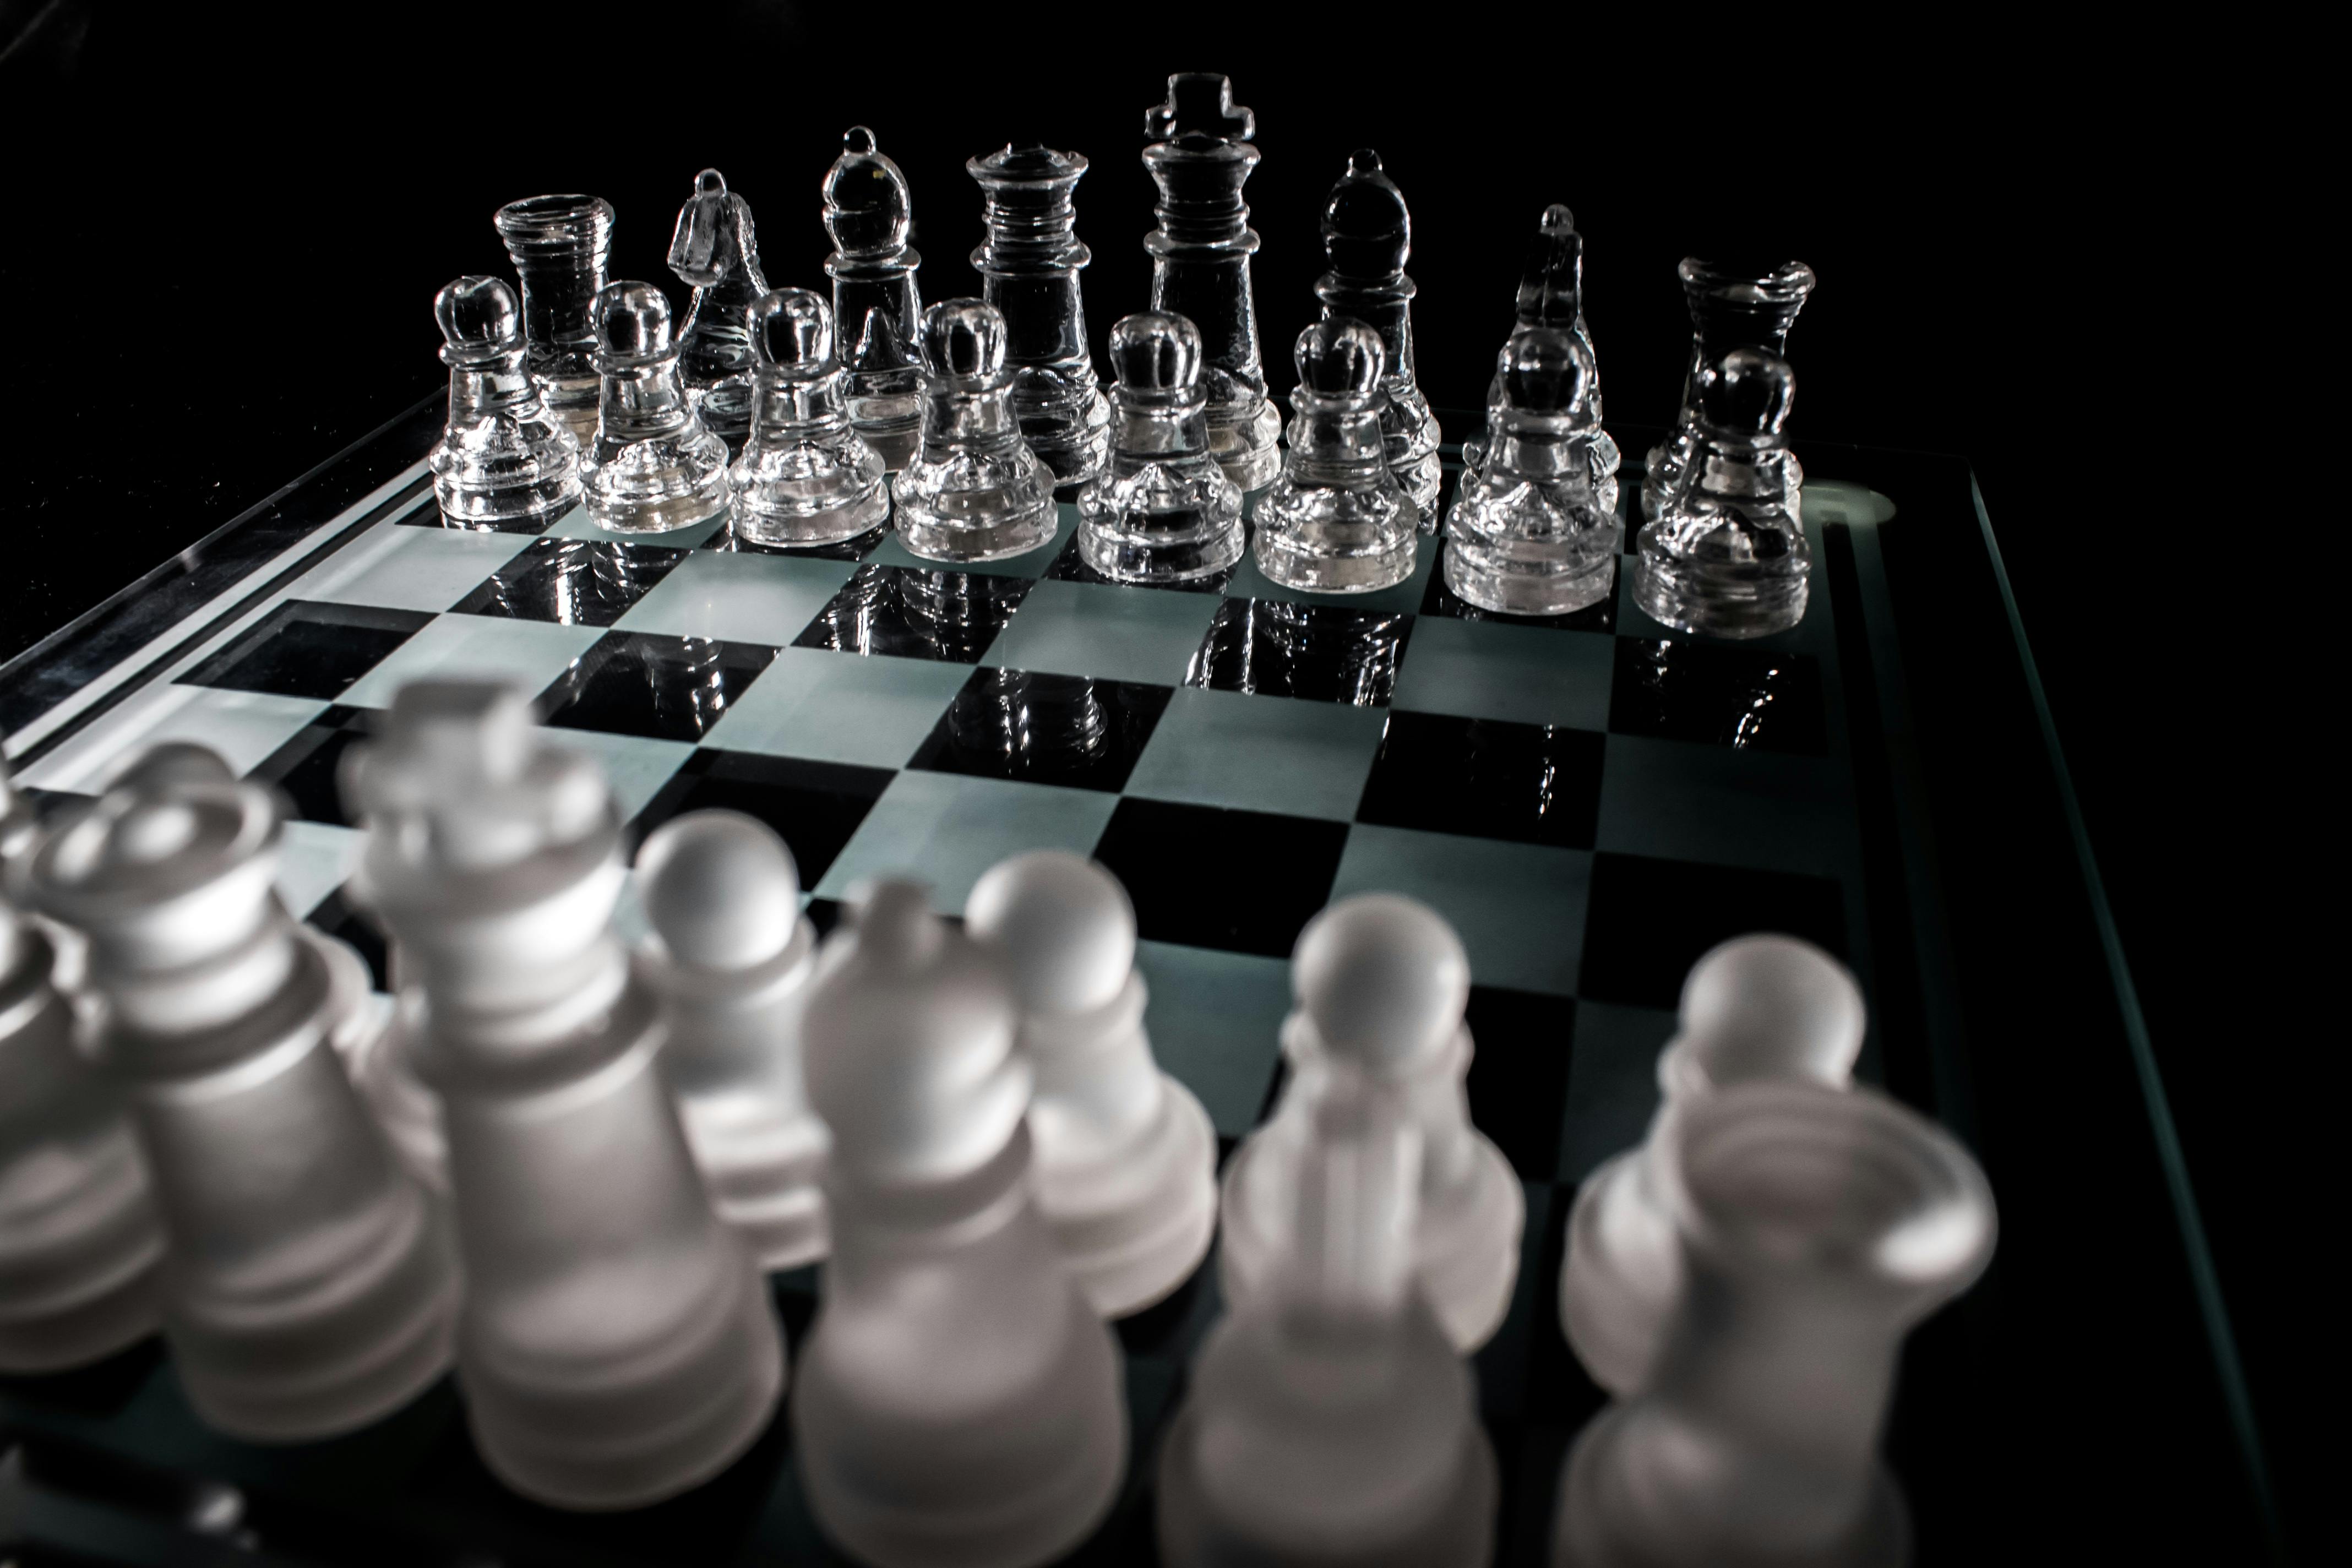 Figurinhas de Jogo de xadrez — Figurinhas de esportes e competição grátis